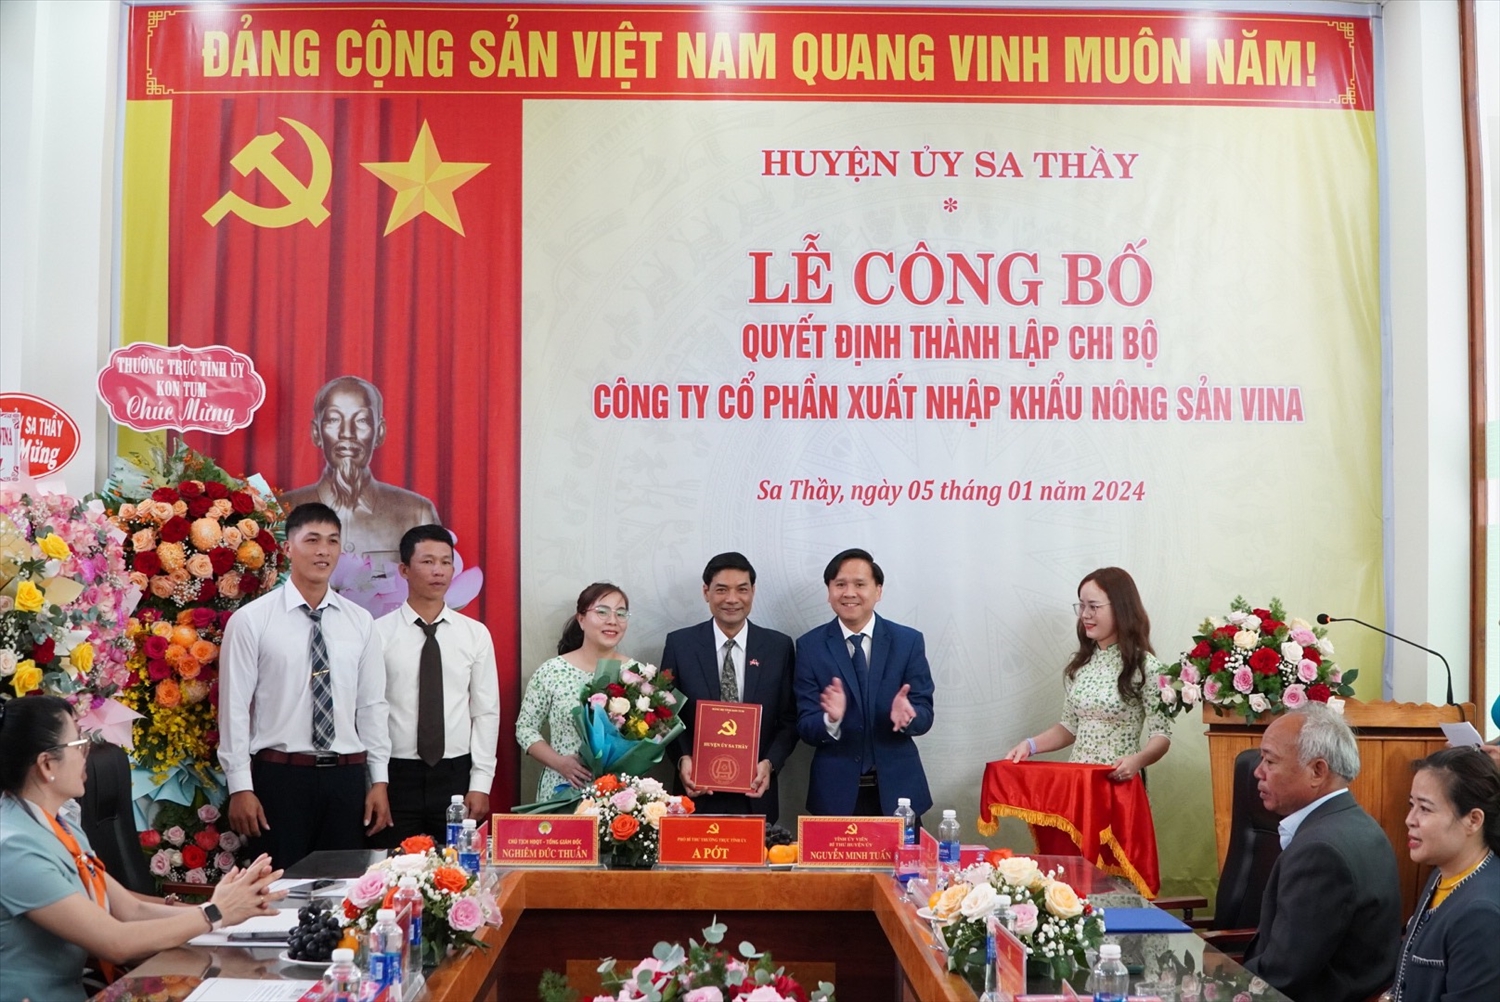 Ông Nguyễn Minh Tuấn (thứ hai từ phải sang), Bí thư Huyện ủy Sa Thầy trao Quyết định thành lập Chi bộ Công ty Cổ phần Xuất nhập khẩu Nông sản Vina